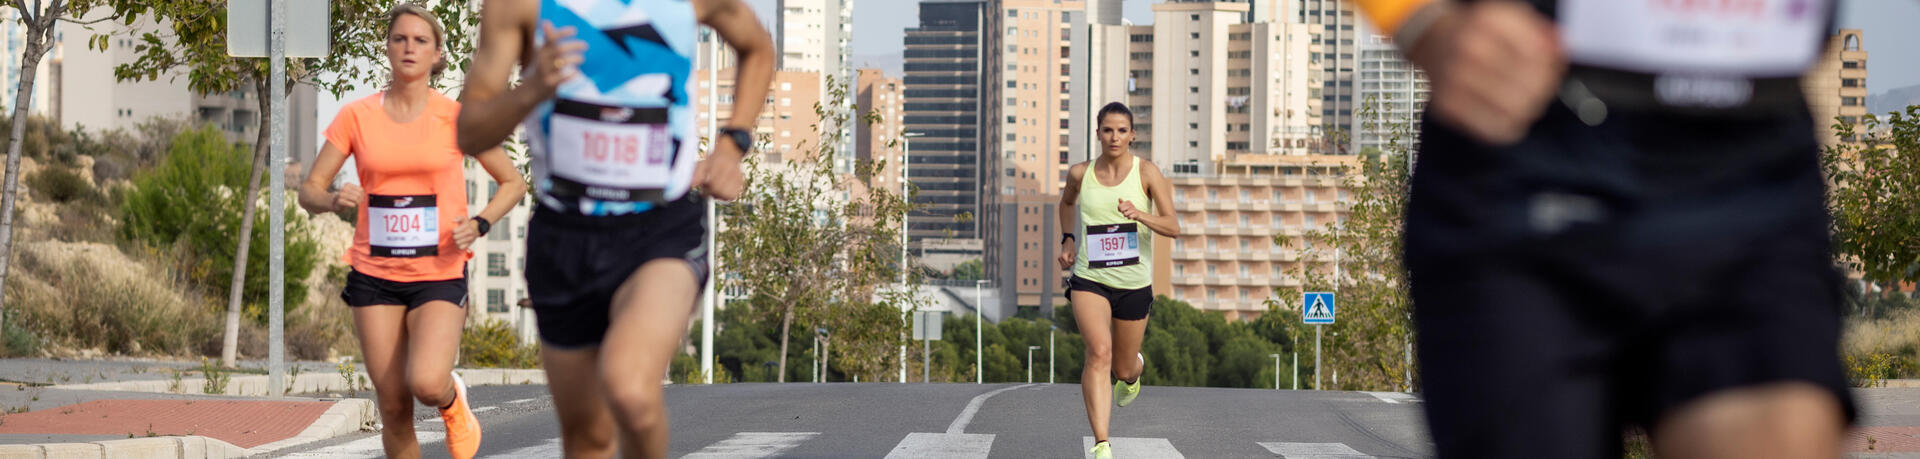 mujer corriendo media maratón